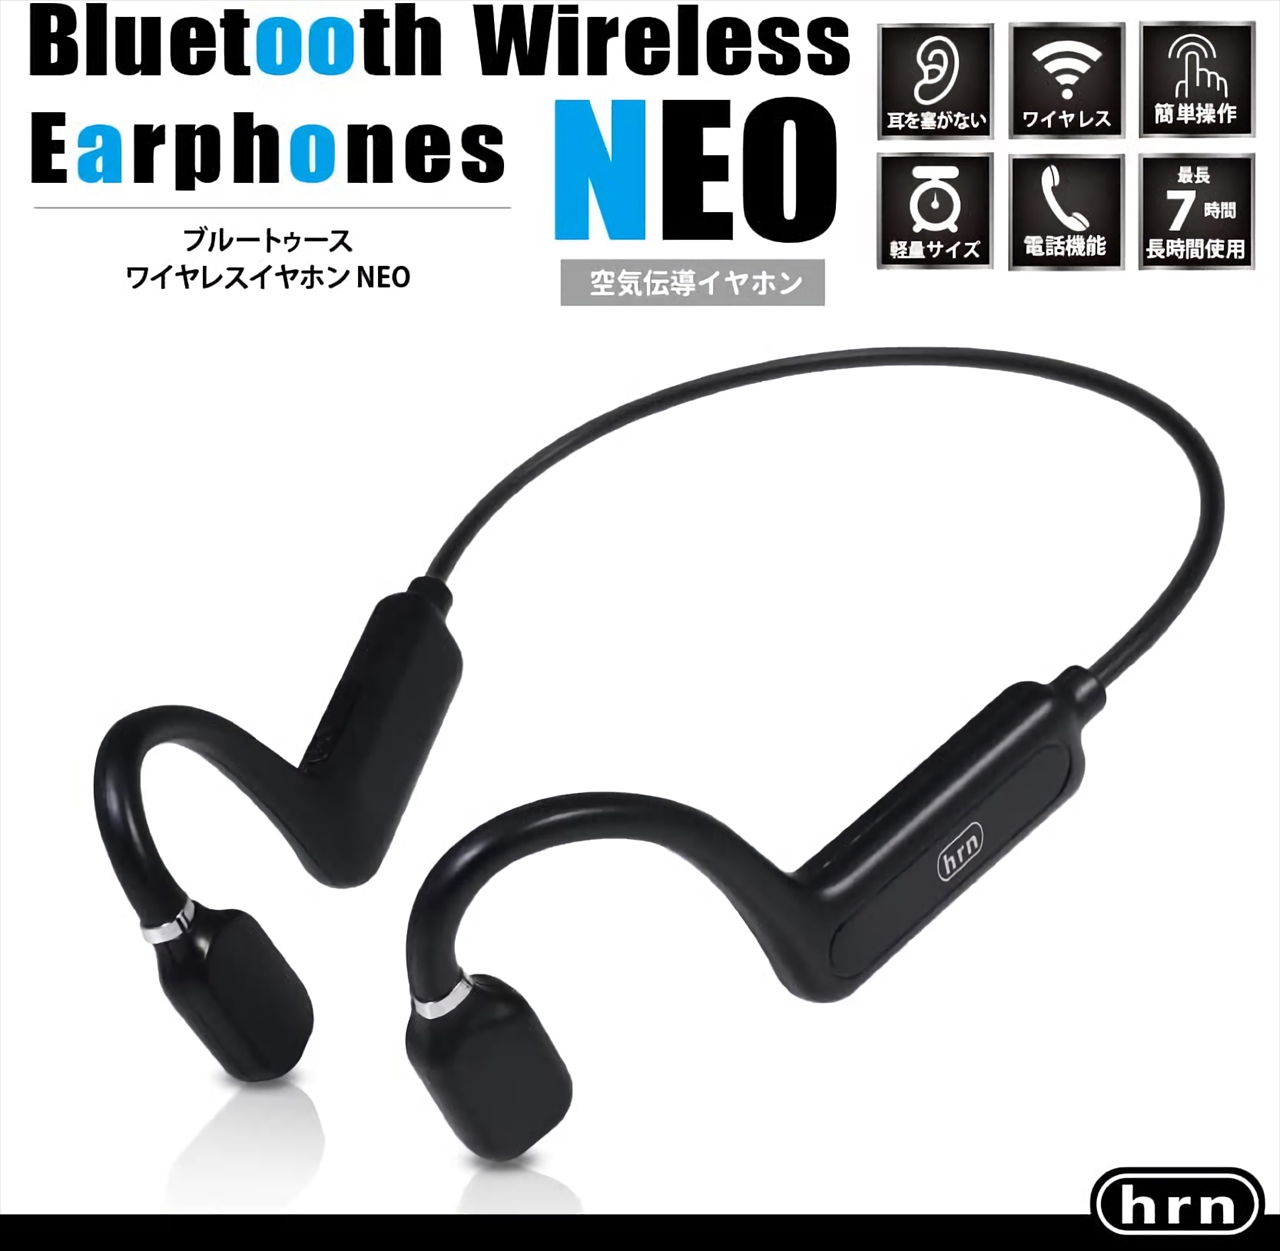 Bluetoothワイヤレスイヤホン HRN-568 耳をふさがないオープンイヤー式 ...